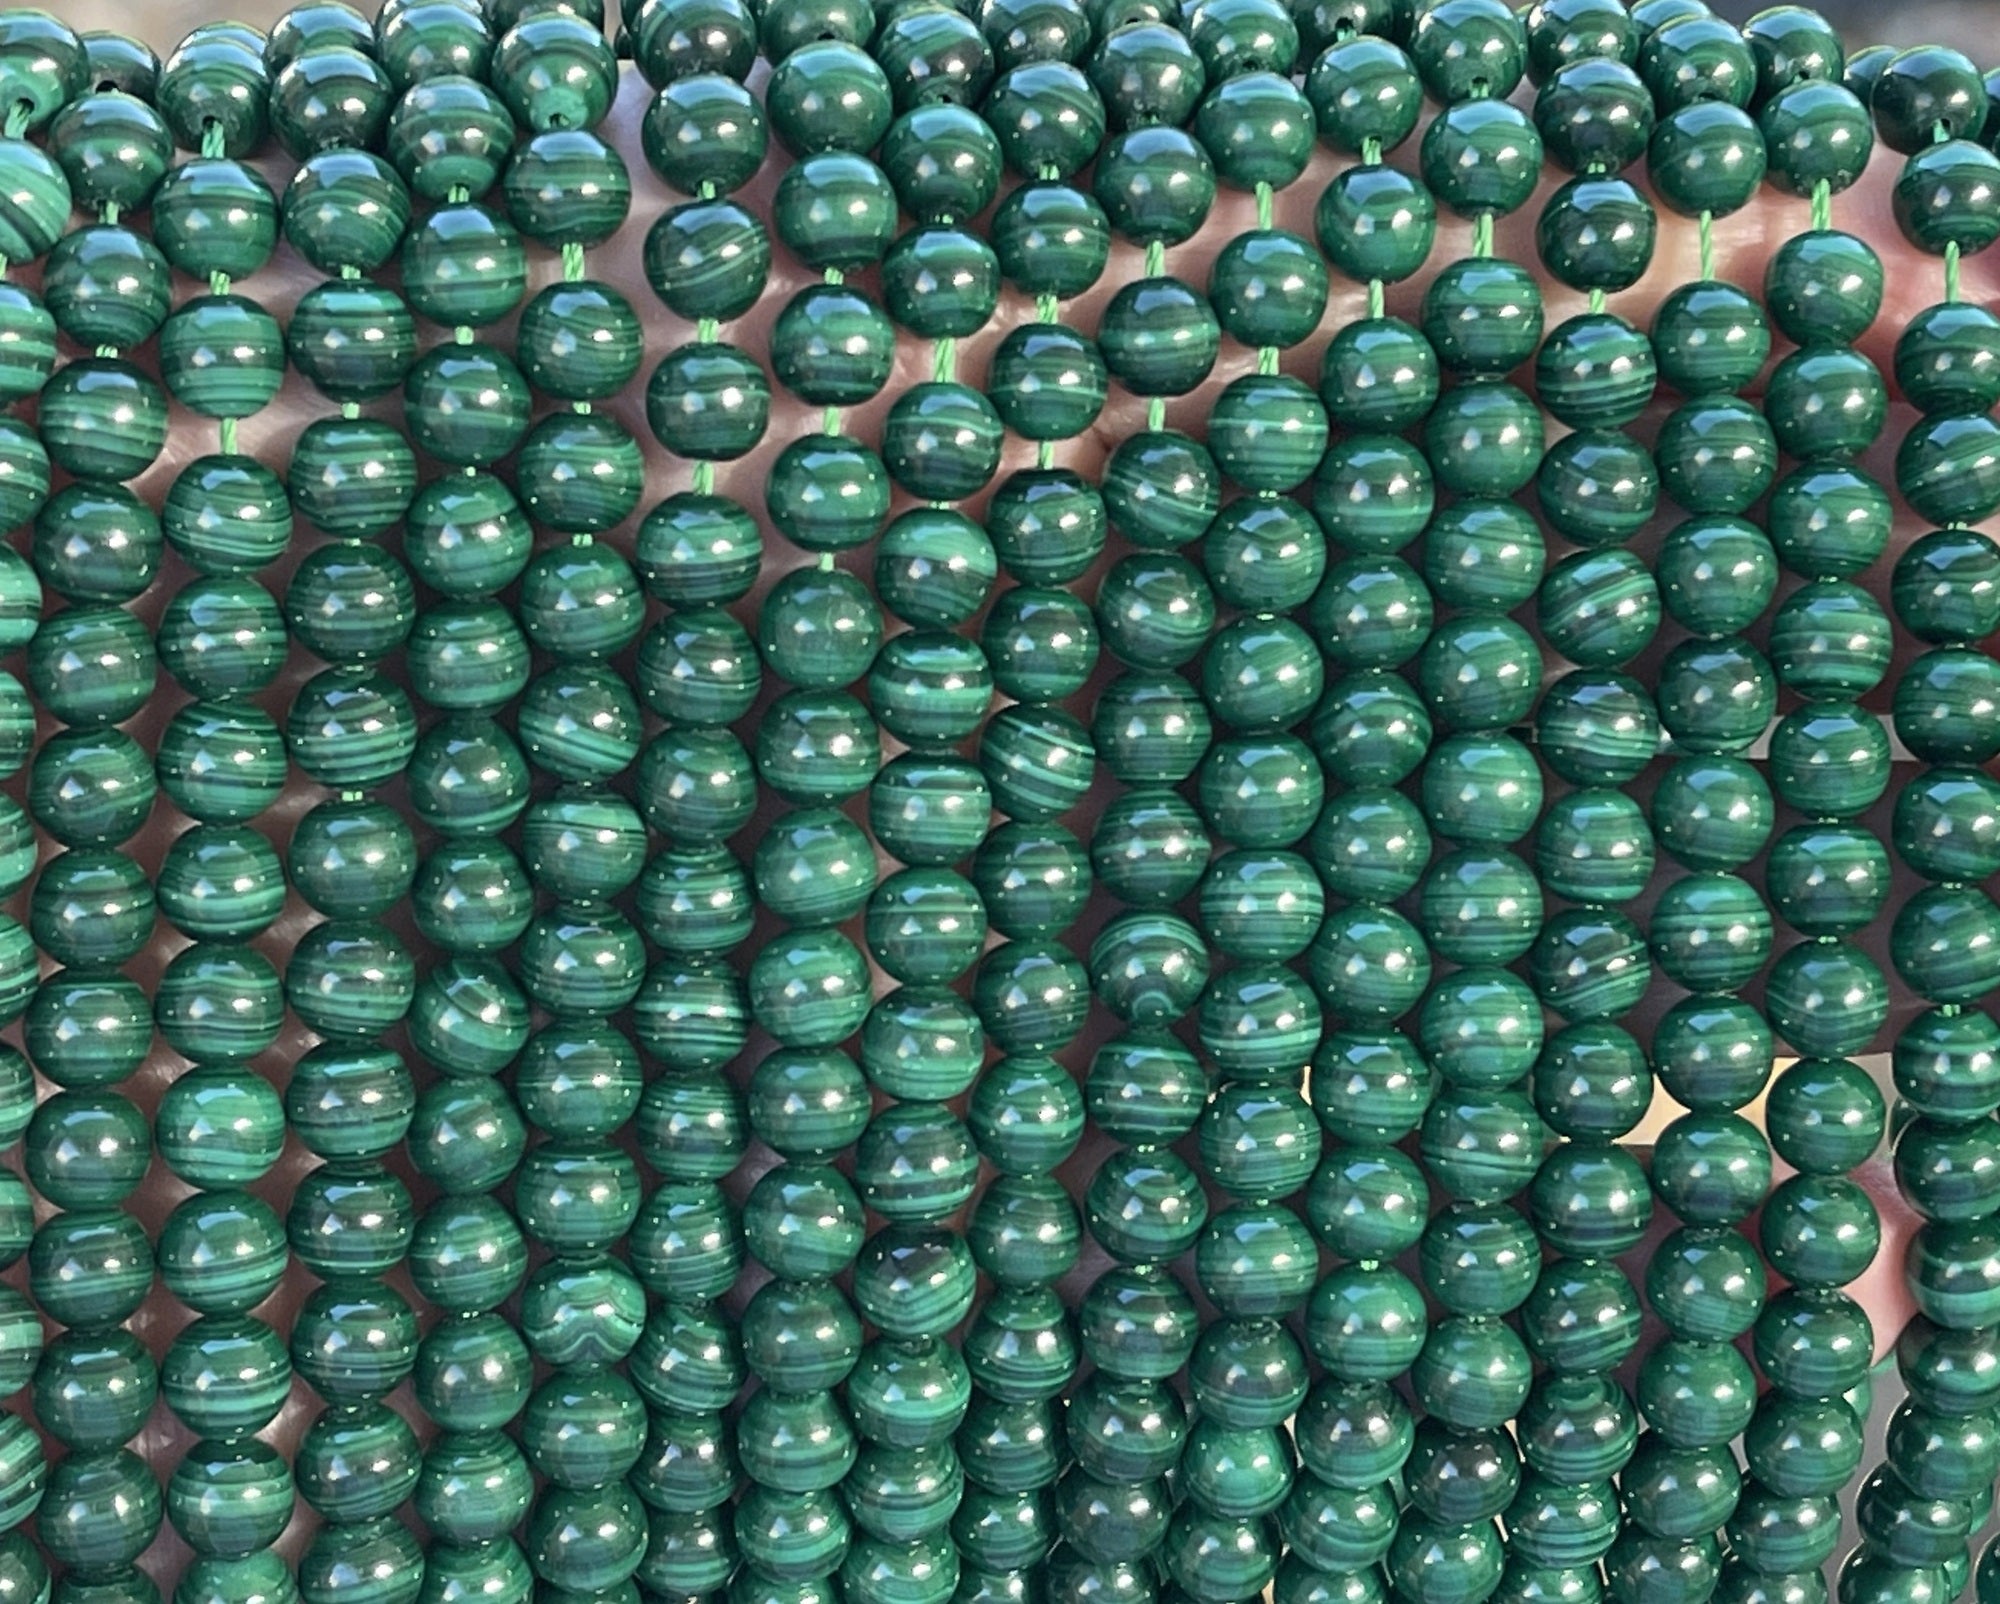 Malachite 6mm round natural gemstone beads 15" strand